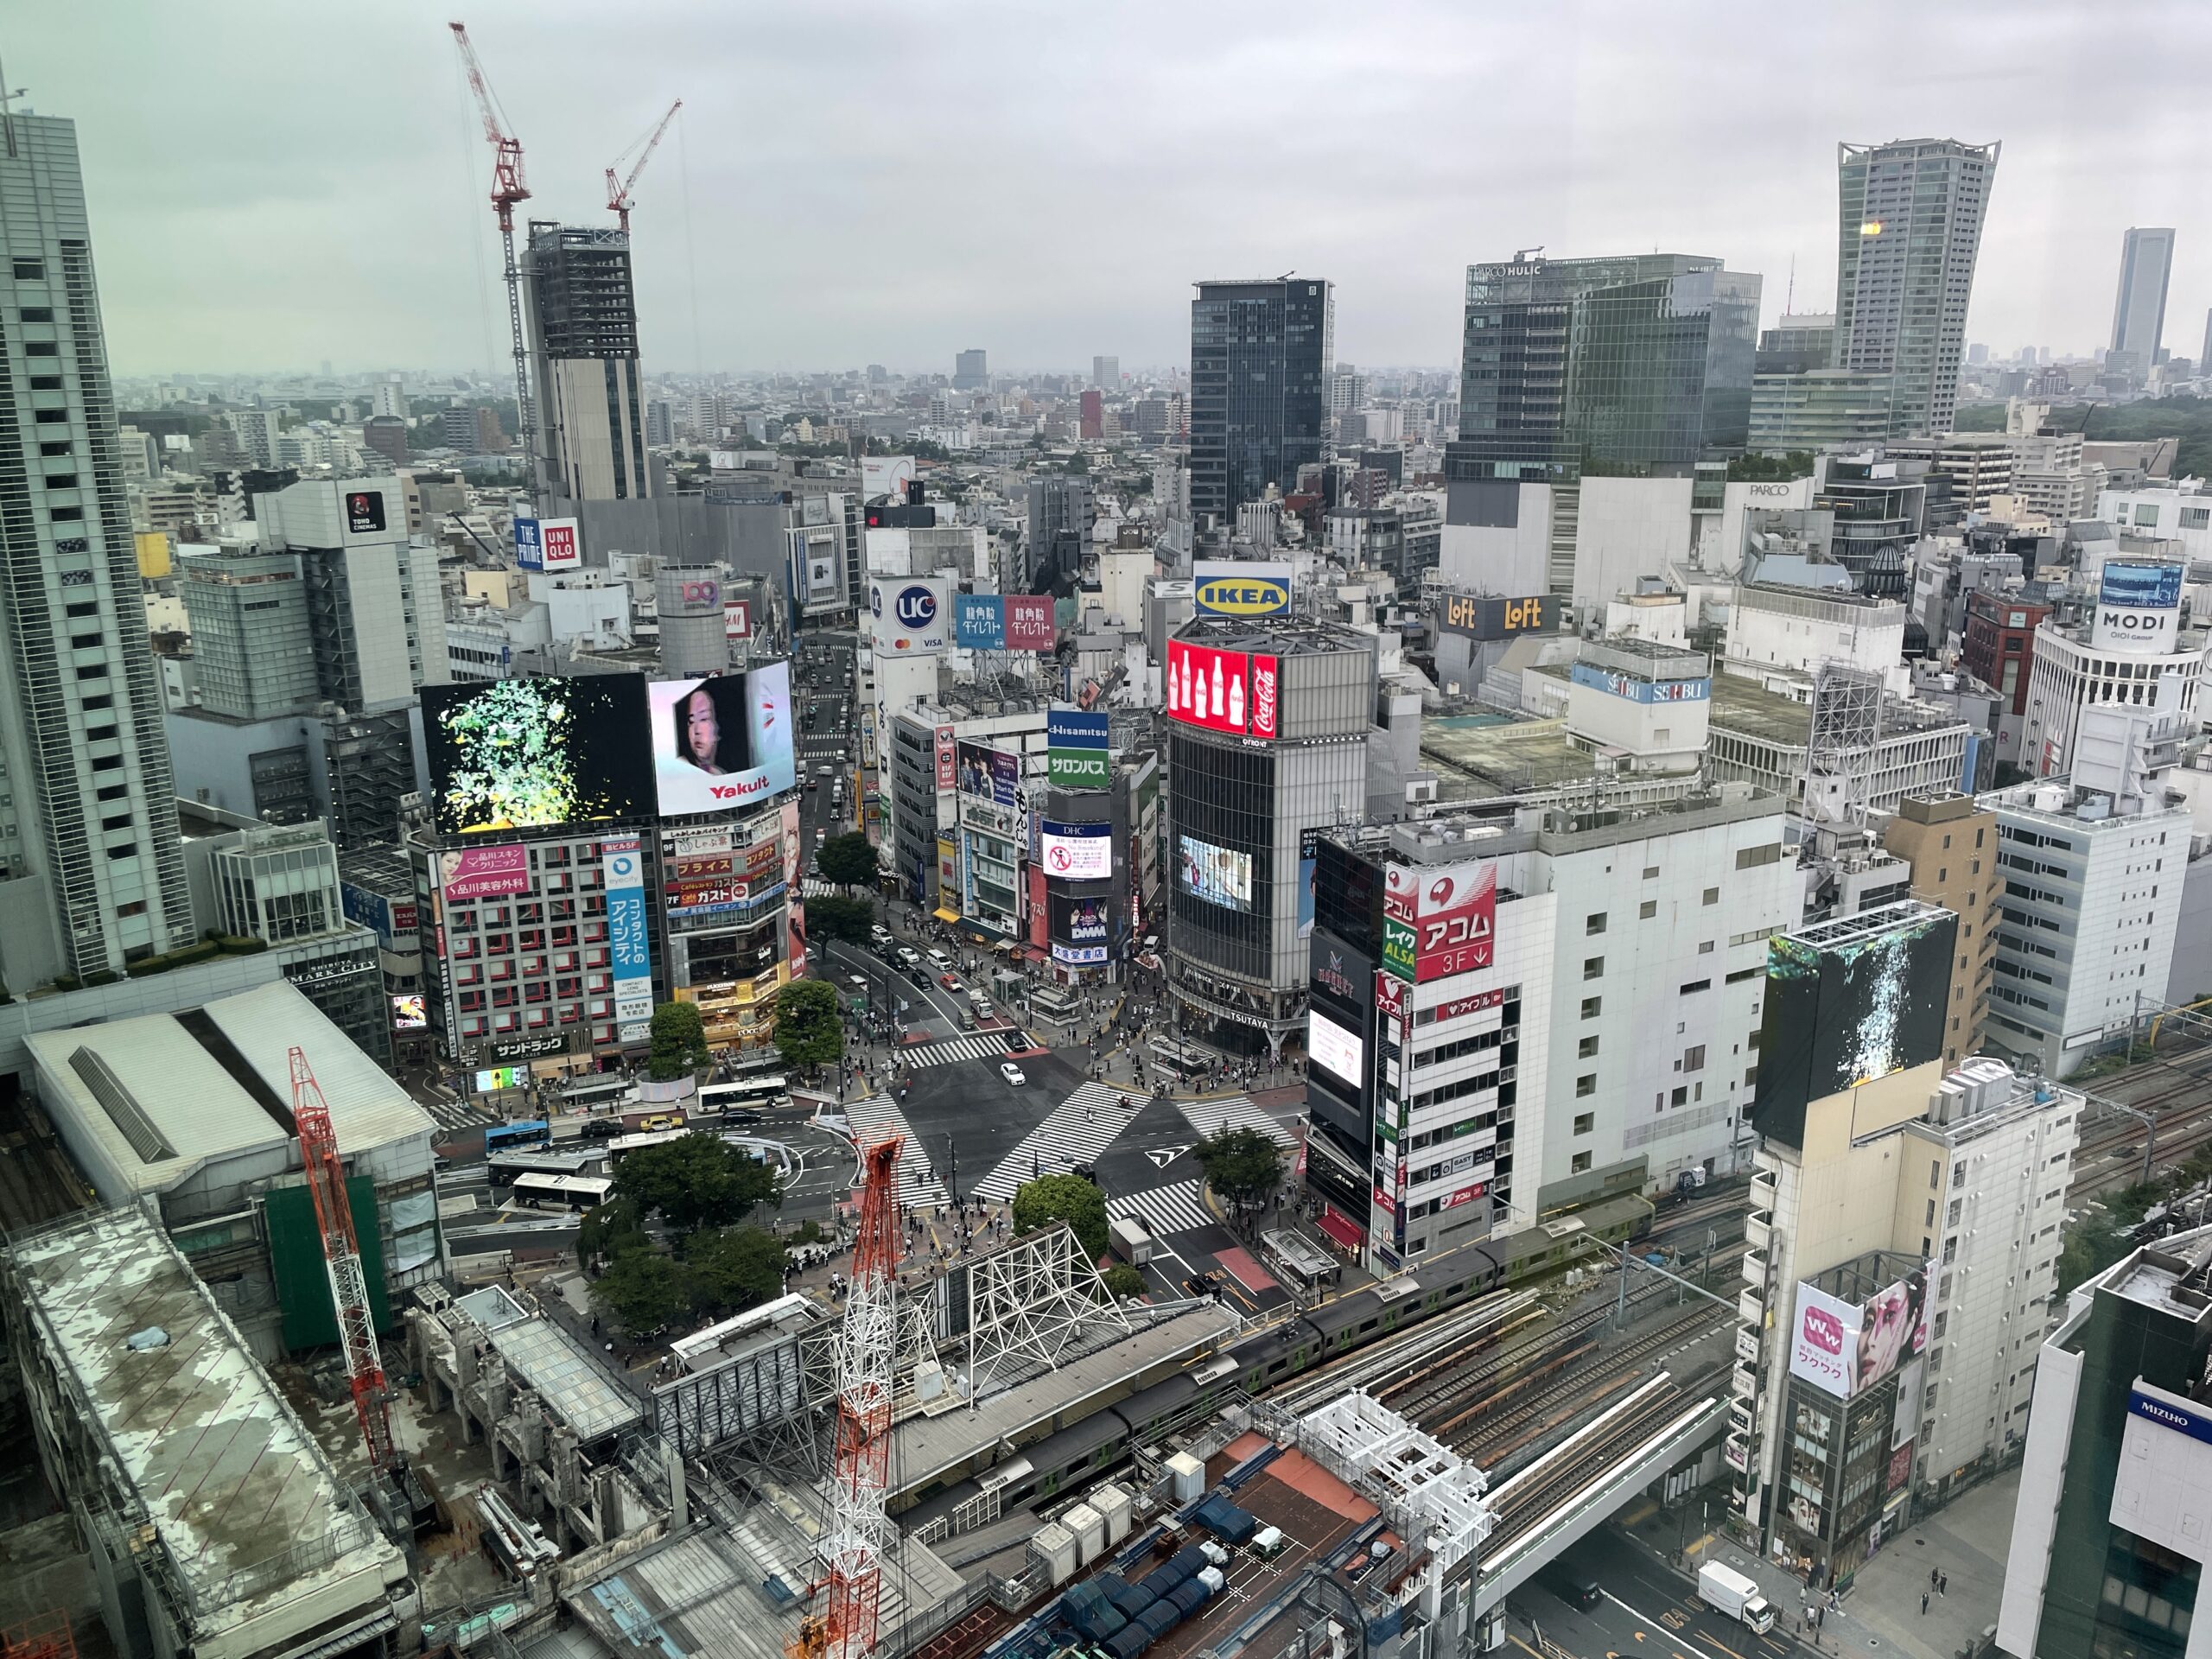 Shibuya nebst berühmter Kreuzung - links unten das im Abriss befindliche Tokyu Kaufhaus